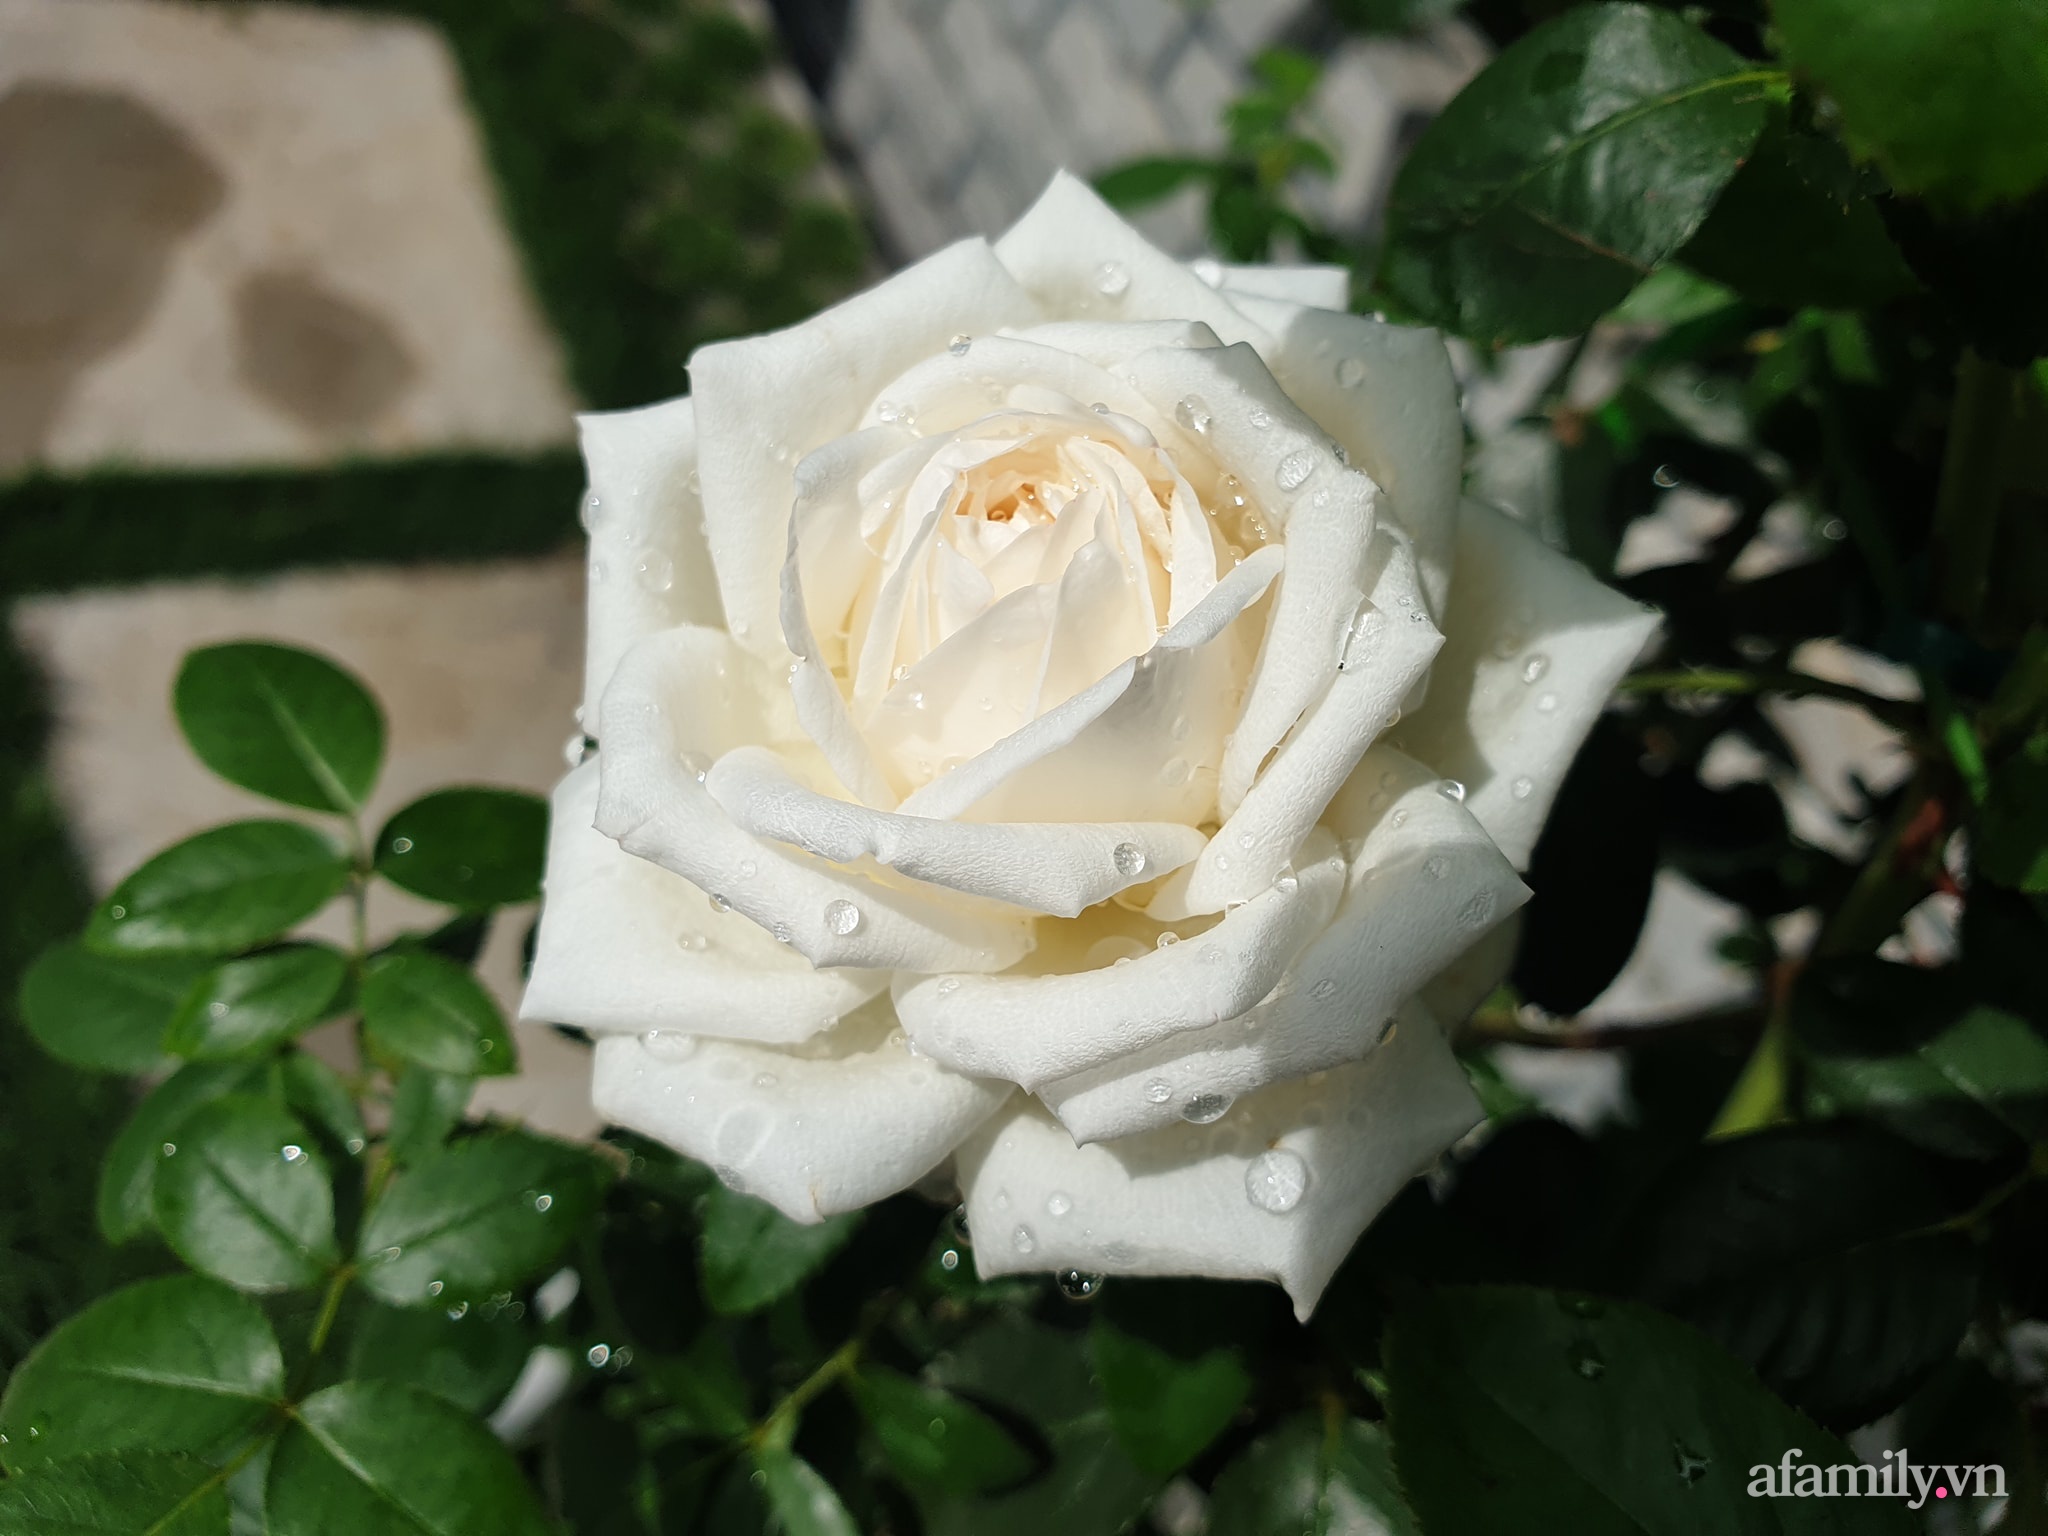 Đắm say trước vẻ đẹp ngọt lịm tim của vườn hồng rực rỡ trên sân thượng ở Bình Dương - Ảnh 23.